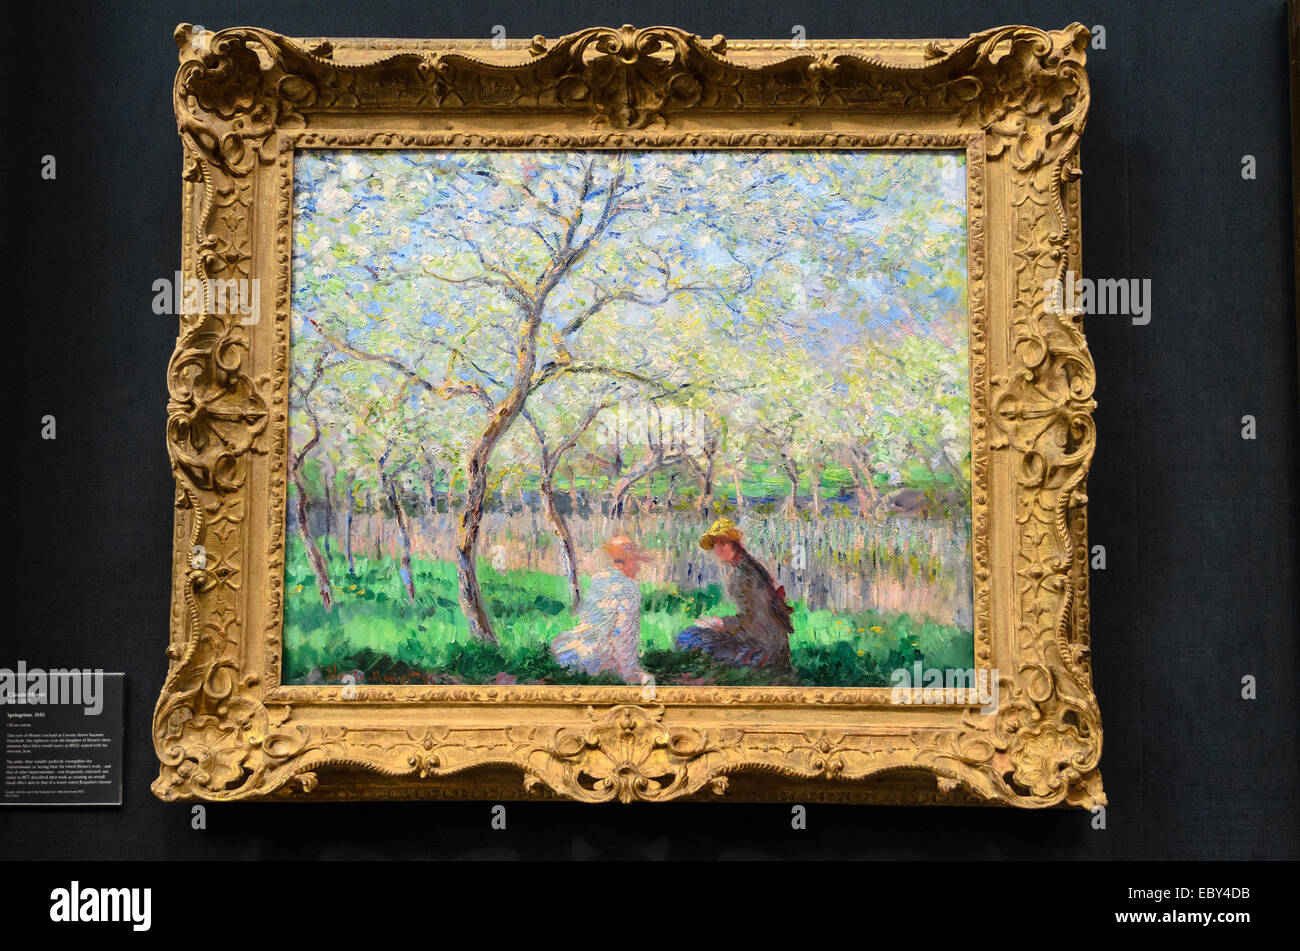 Claude Monet 1906-1957 Printemps, 1886 huile sur toile Musée Fitzwilliam - Cambridge, Angleterre Banque D'Images